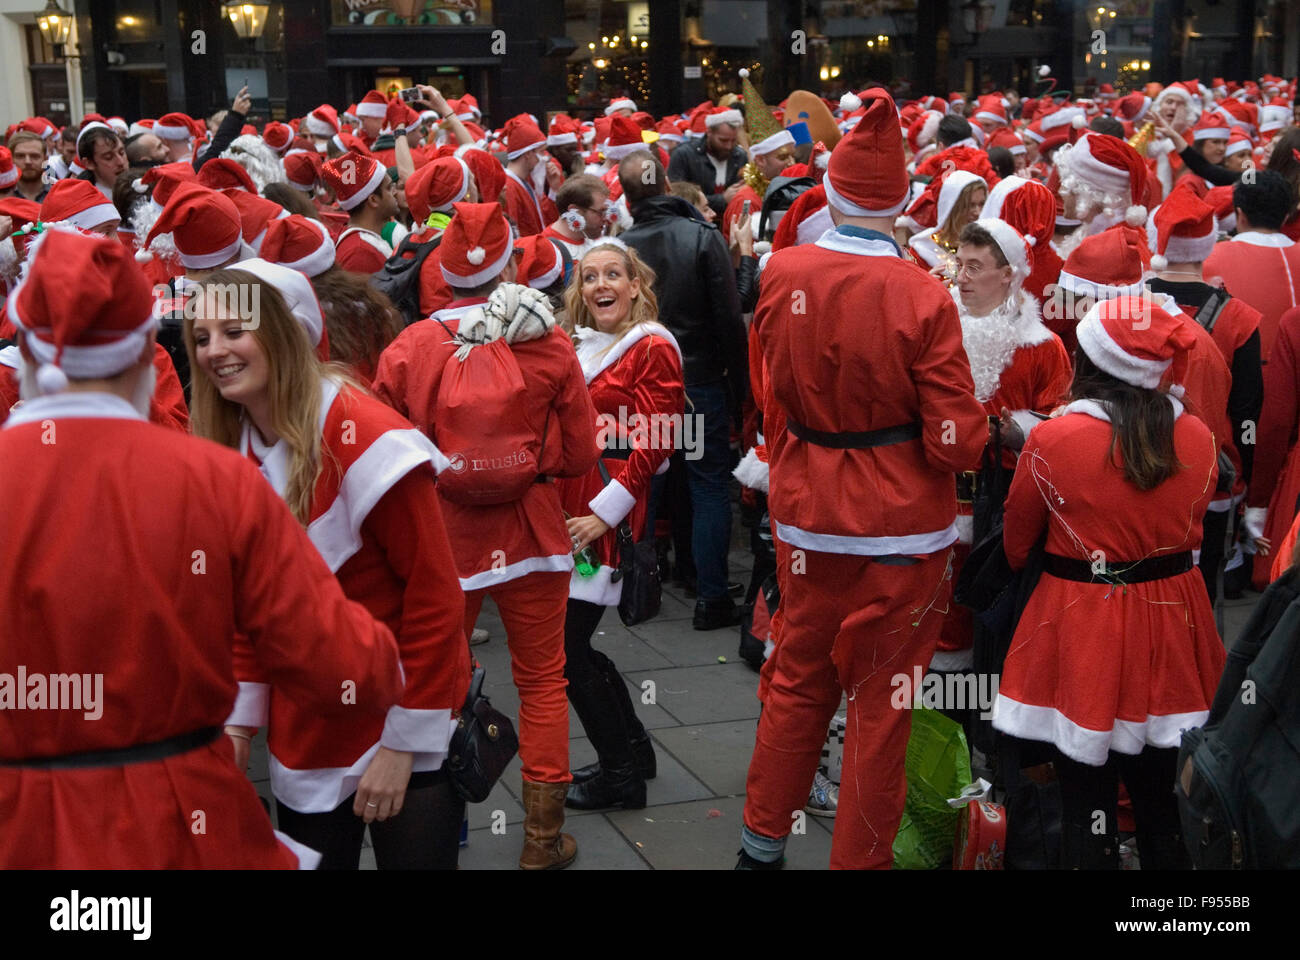 SantaCon Royaume-Uni. Santa Claus Clauss Claus jeunes Noël ambiance festive d rendez-vous devant Liverpool Street Station centre-ville de Londres Royaume-Uni des années 2015 2010 HOMER SYKES Banque D'Images